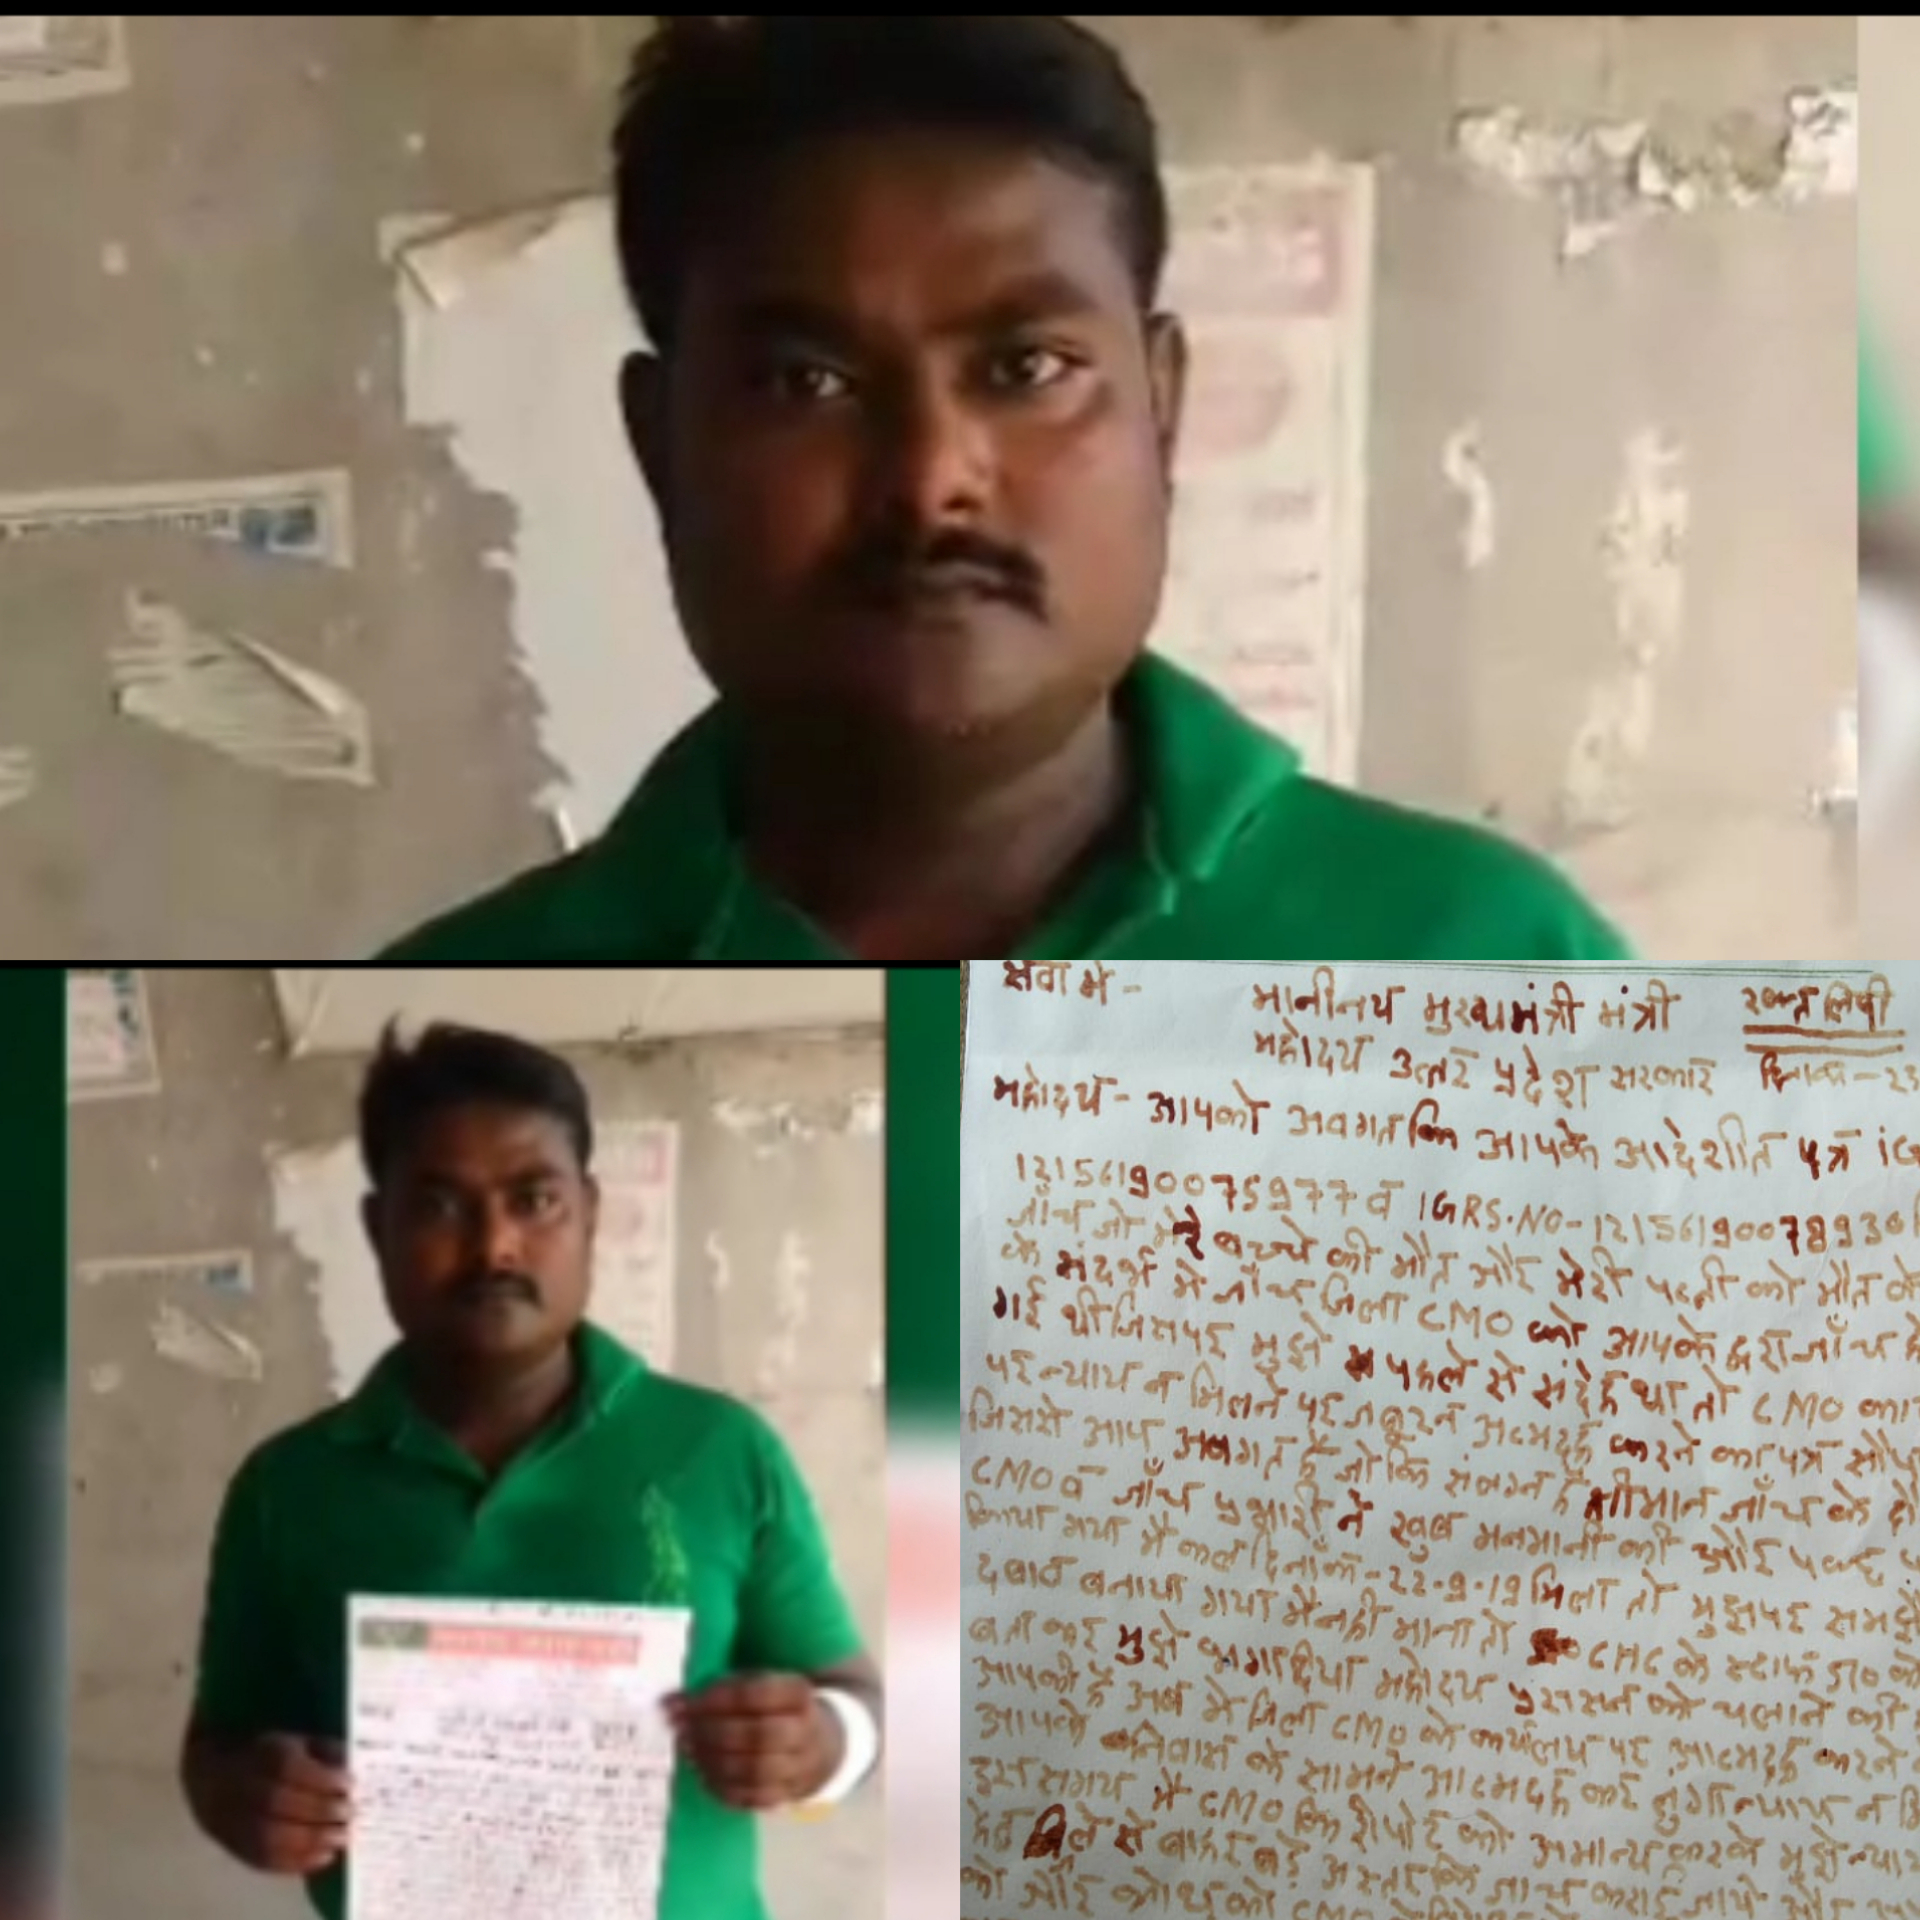 भाजपा विधानसभा प्रभारी ने अपने खून से पत्र लिखकर मुख्यमंत्री आवास पर दी आत्मदाह की धमकी, मचा हड़कंप